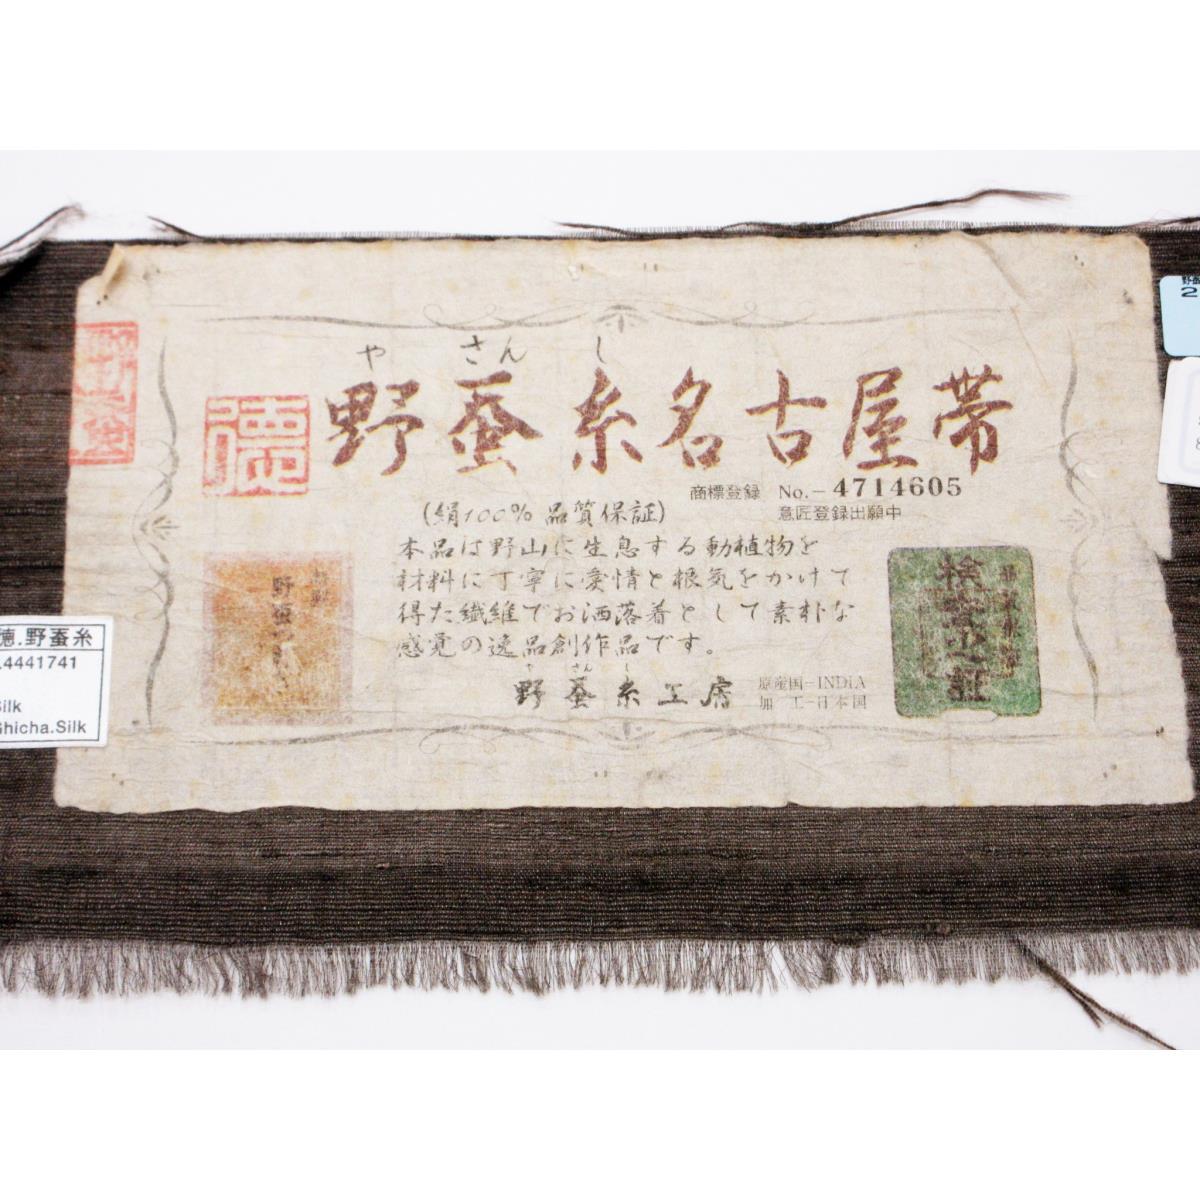 [Unused items] Nagoya obi, wild silk thread